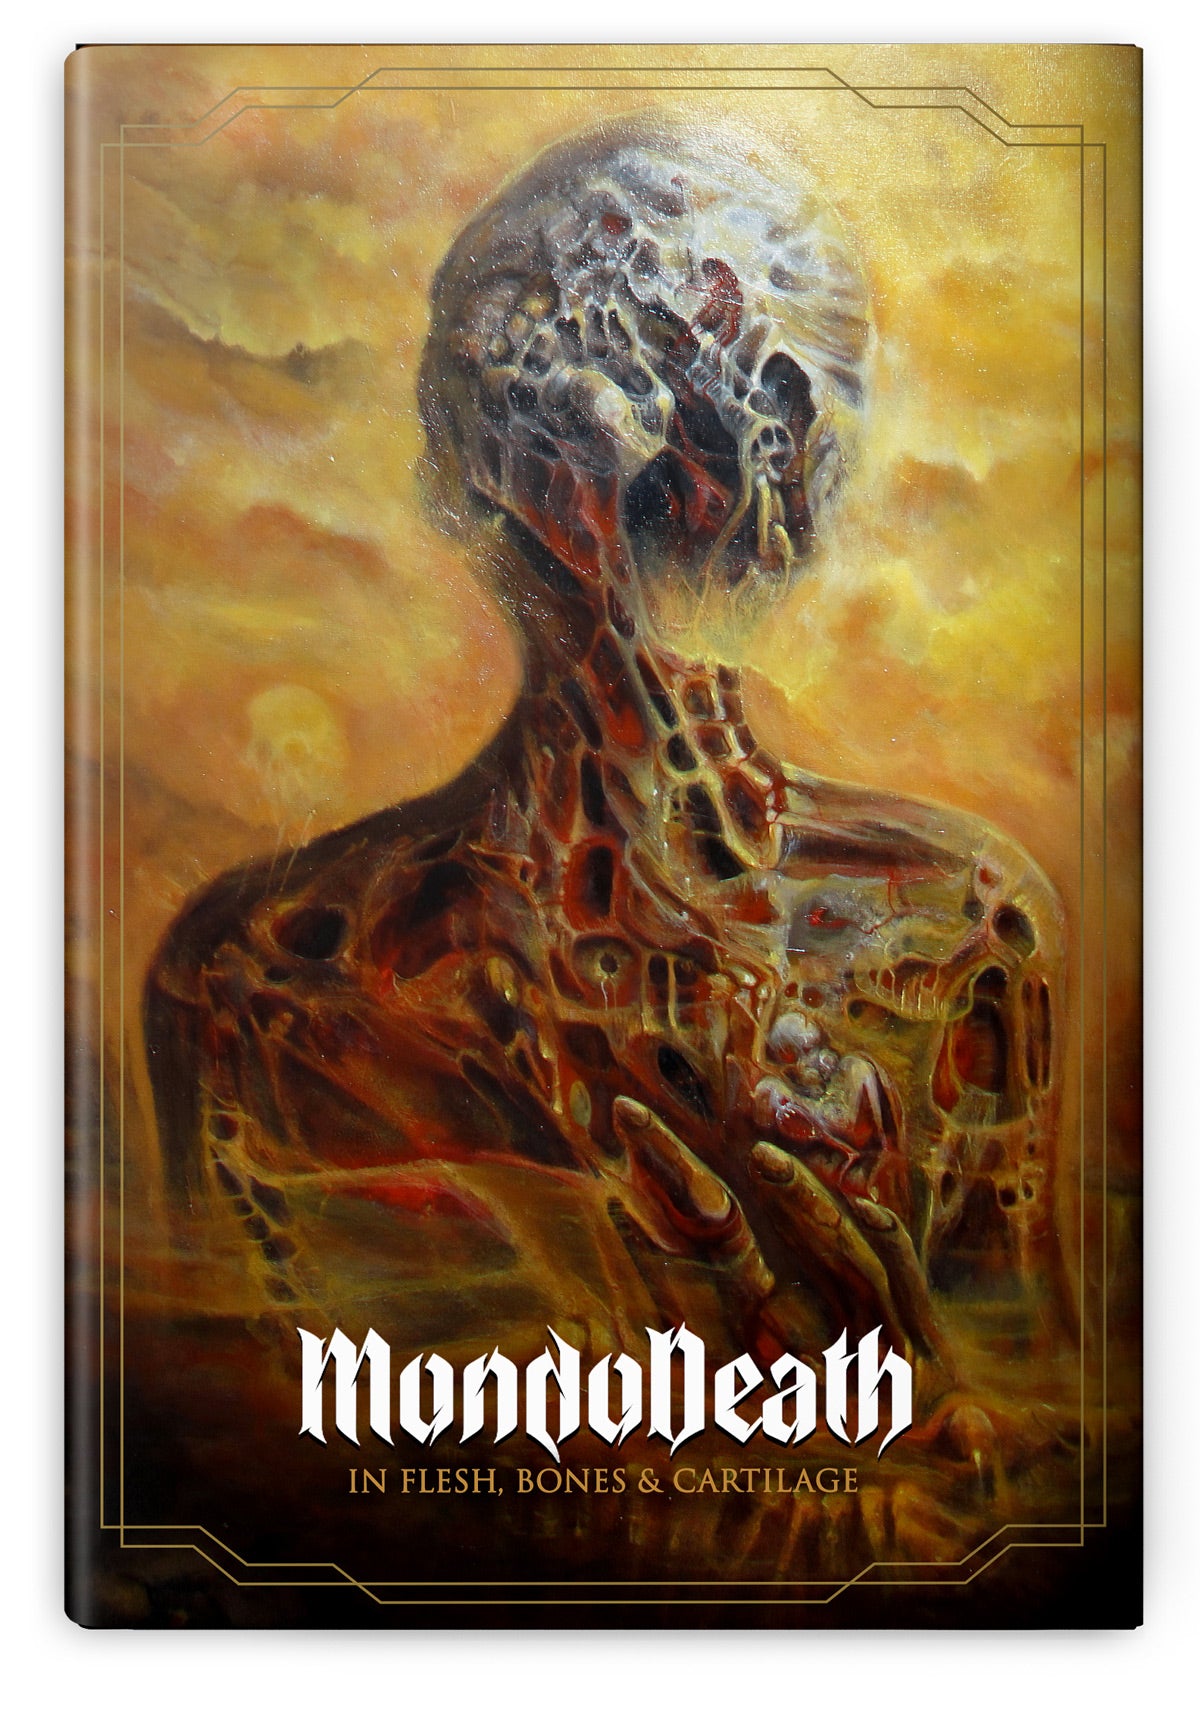 Mondo Death, In Flesh, Bones & Cartilage